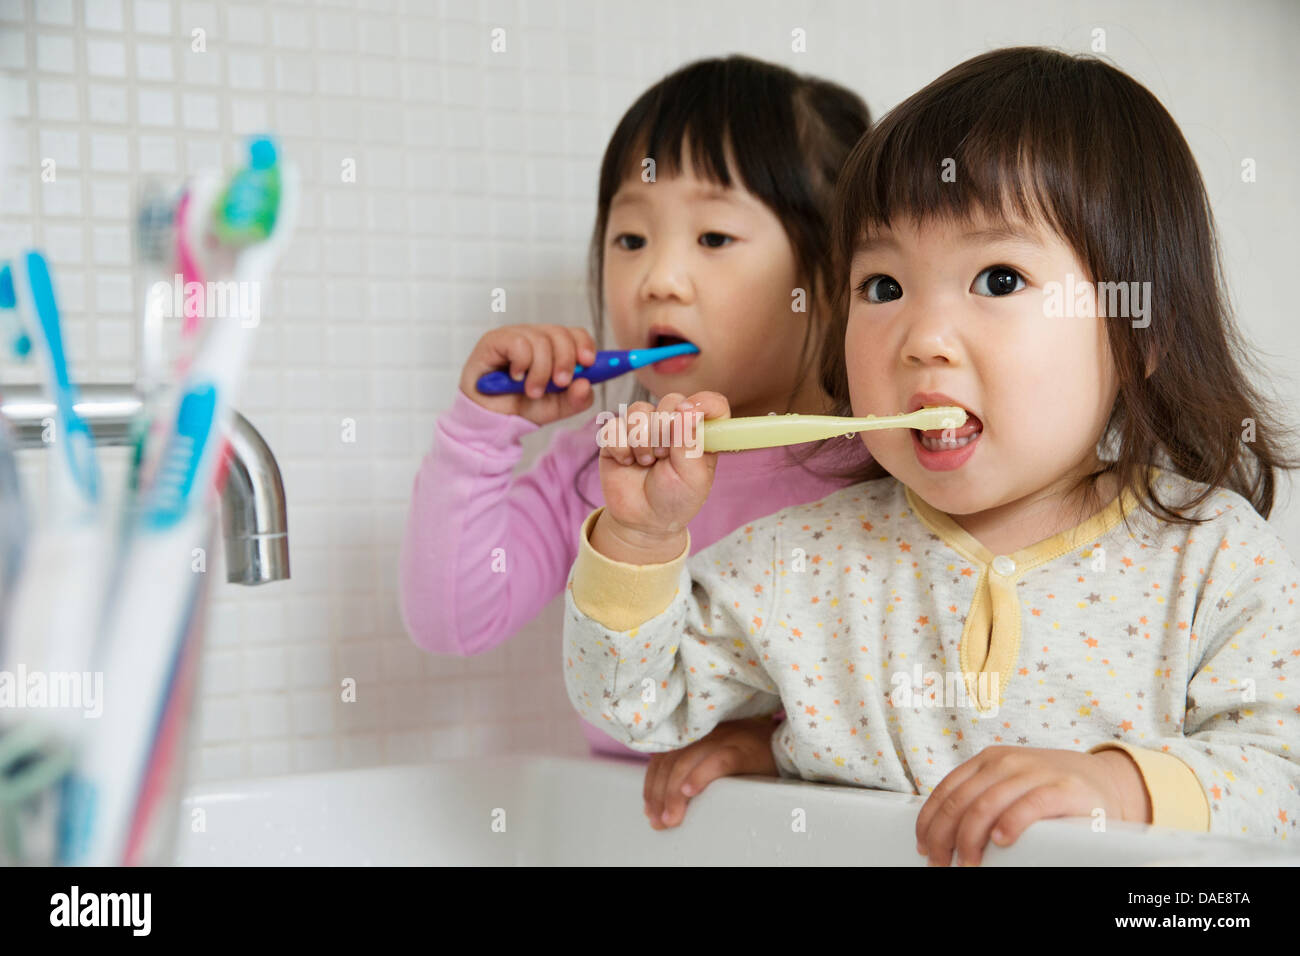 Zwei Mädchen Kleinkinder Zähneputzen im Badezimmer Waschbecken Stockfoto